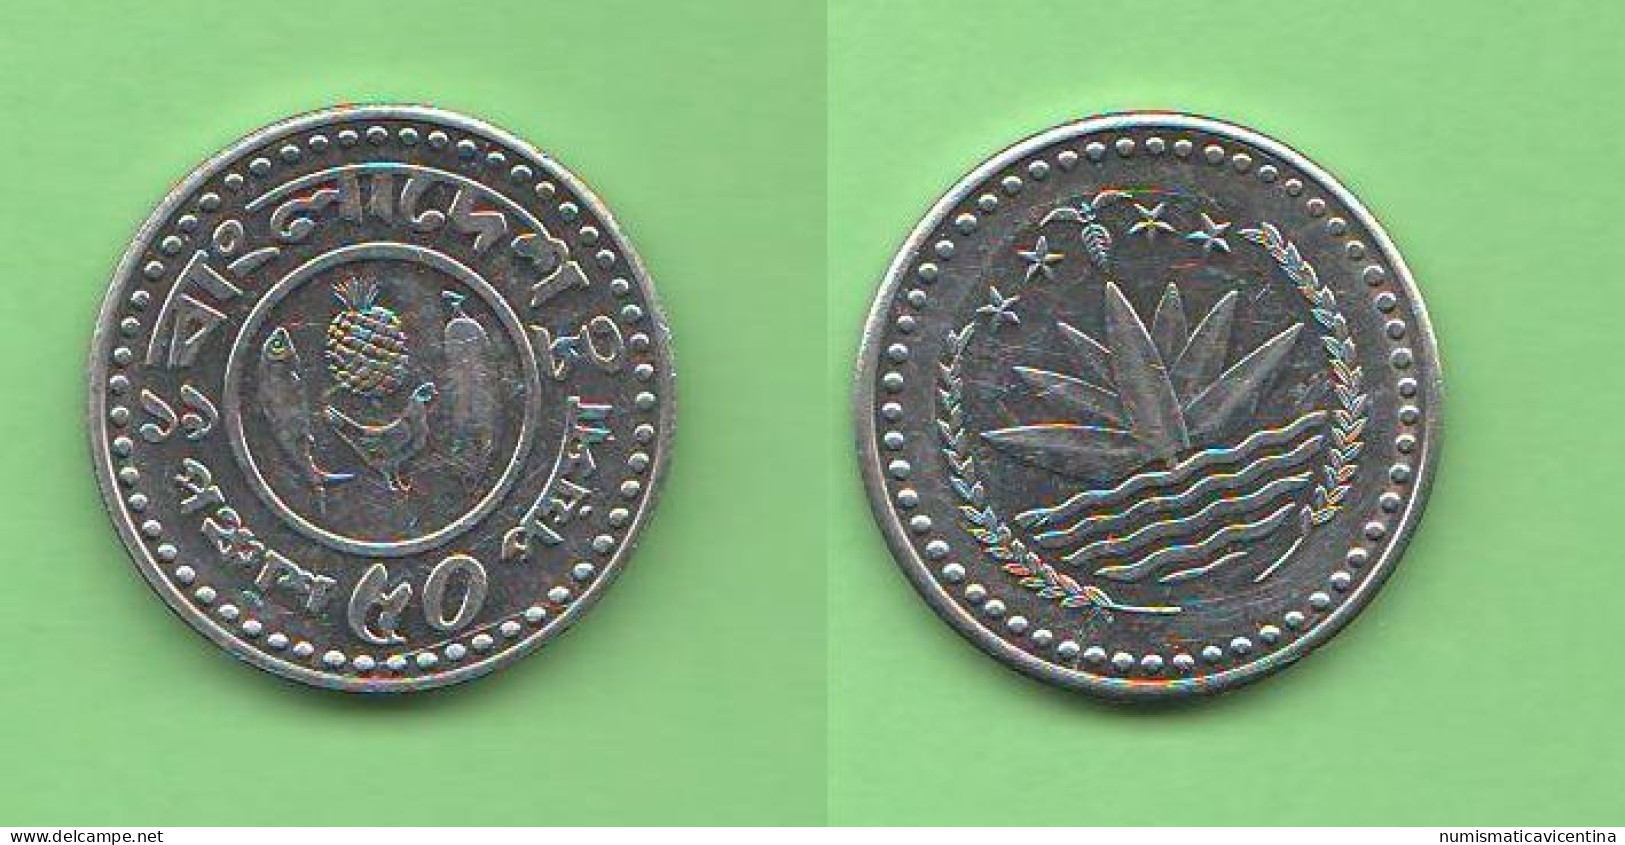 Bangladesh 25 + 50 Poisha FAO Steel Asian Coin - Bangladesch